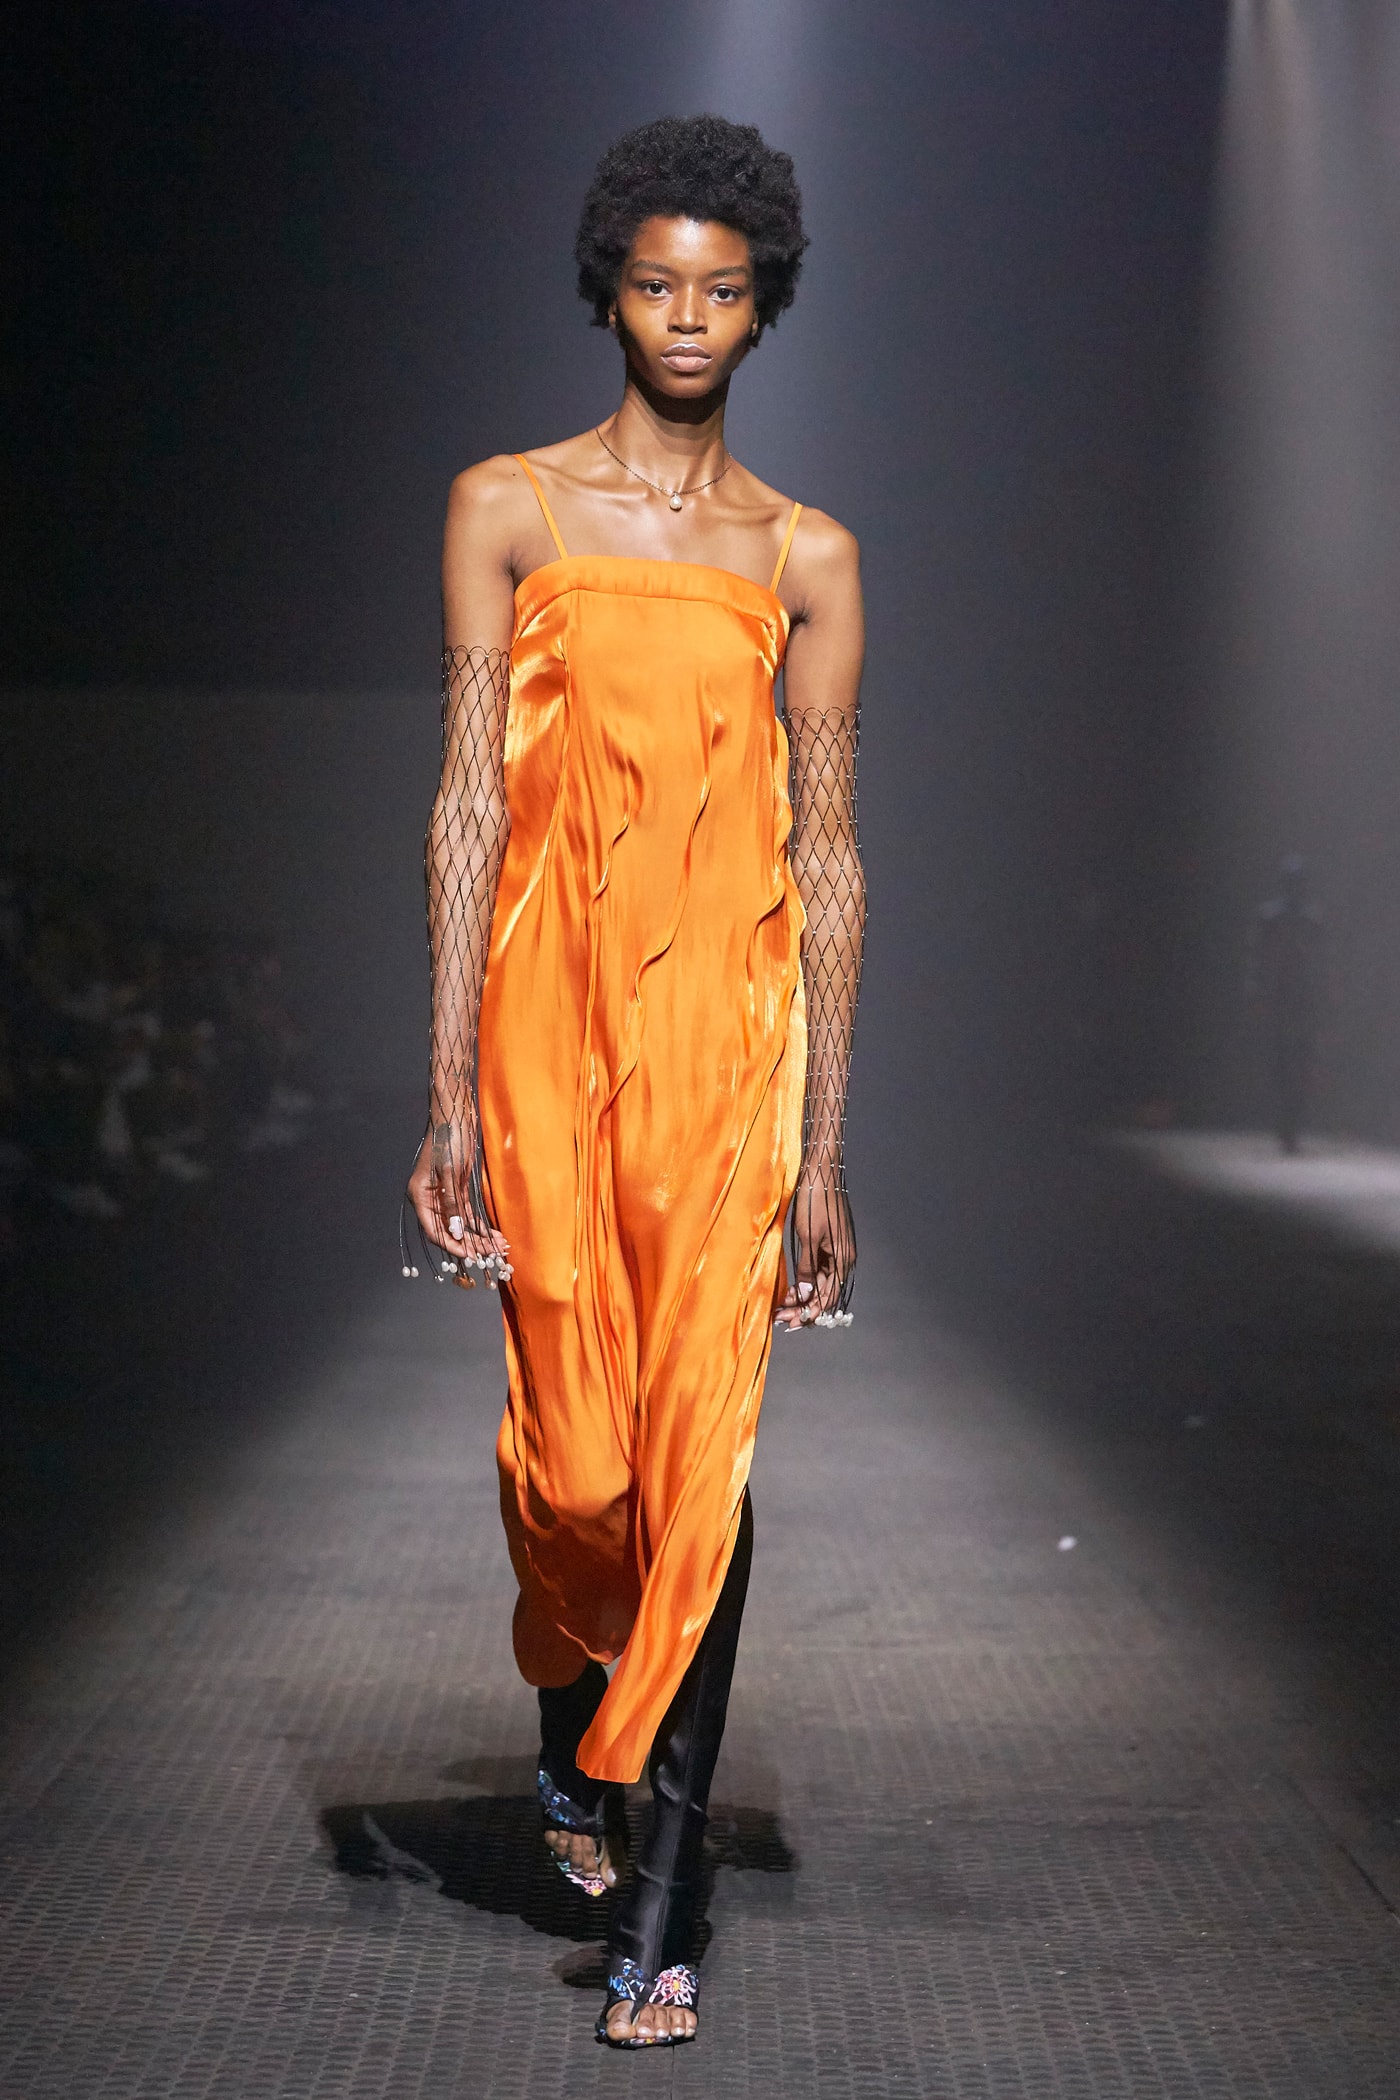 KENZO Spring Summer 2020 Show Paris Fashion Week Men's Dress Orange